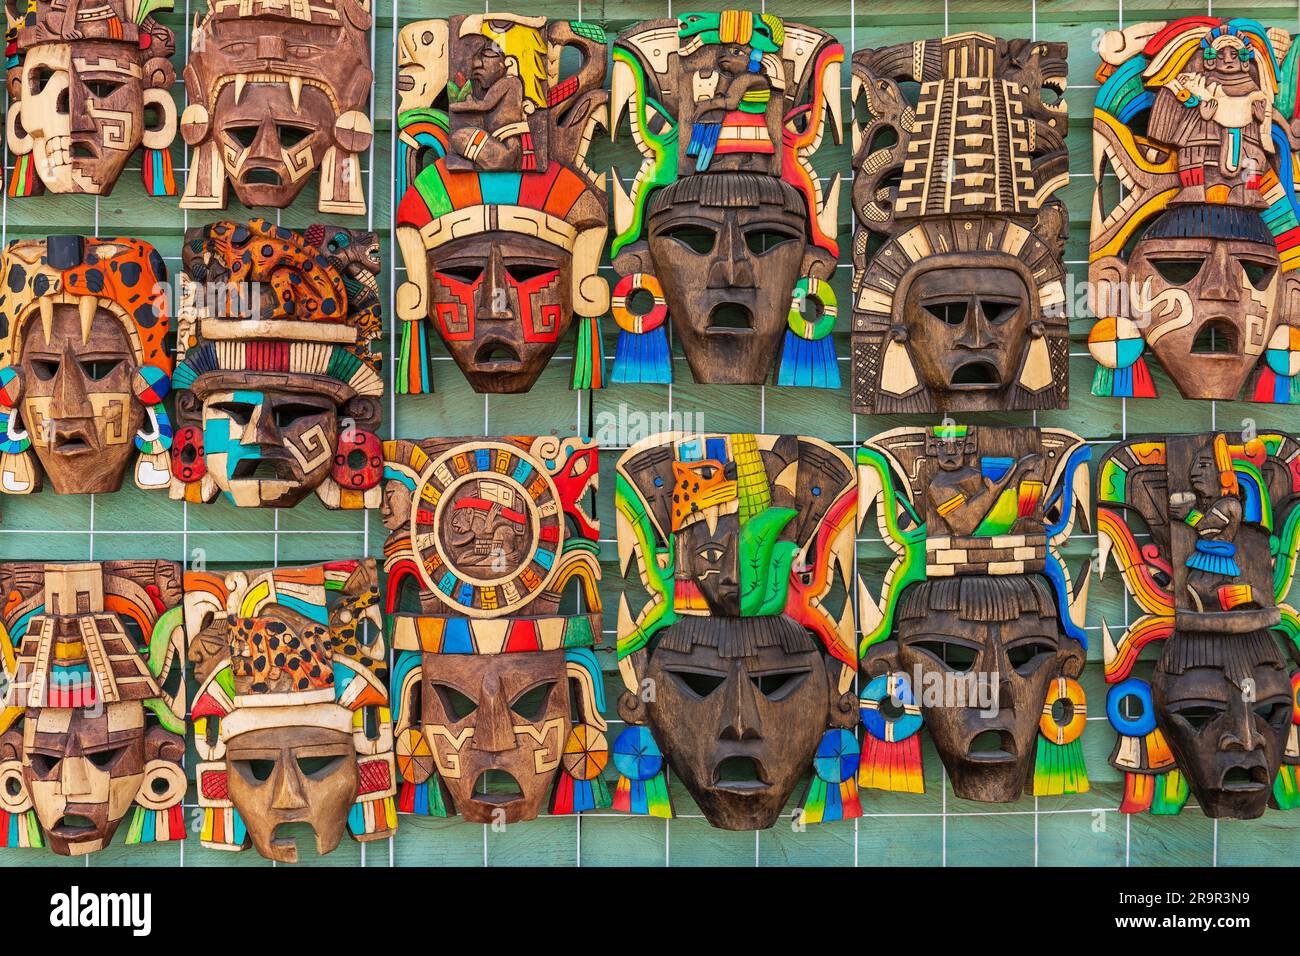 Artisanat souvenir avec masque en bois mexicain sur le marché local, Mexique. Banque D'Images